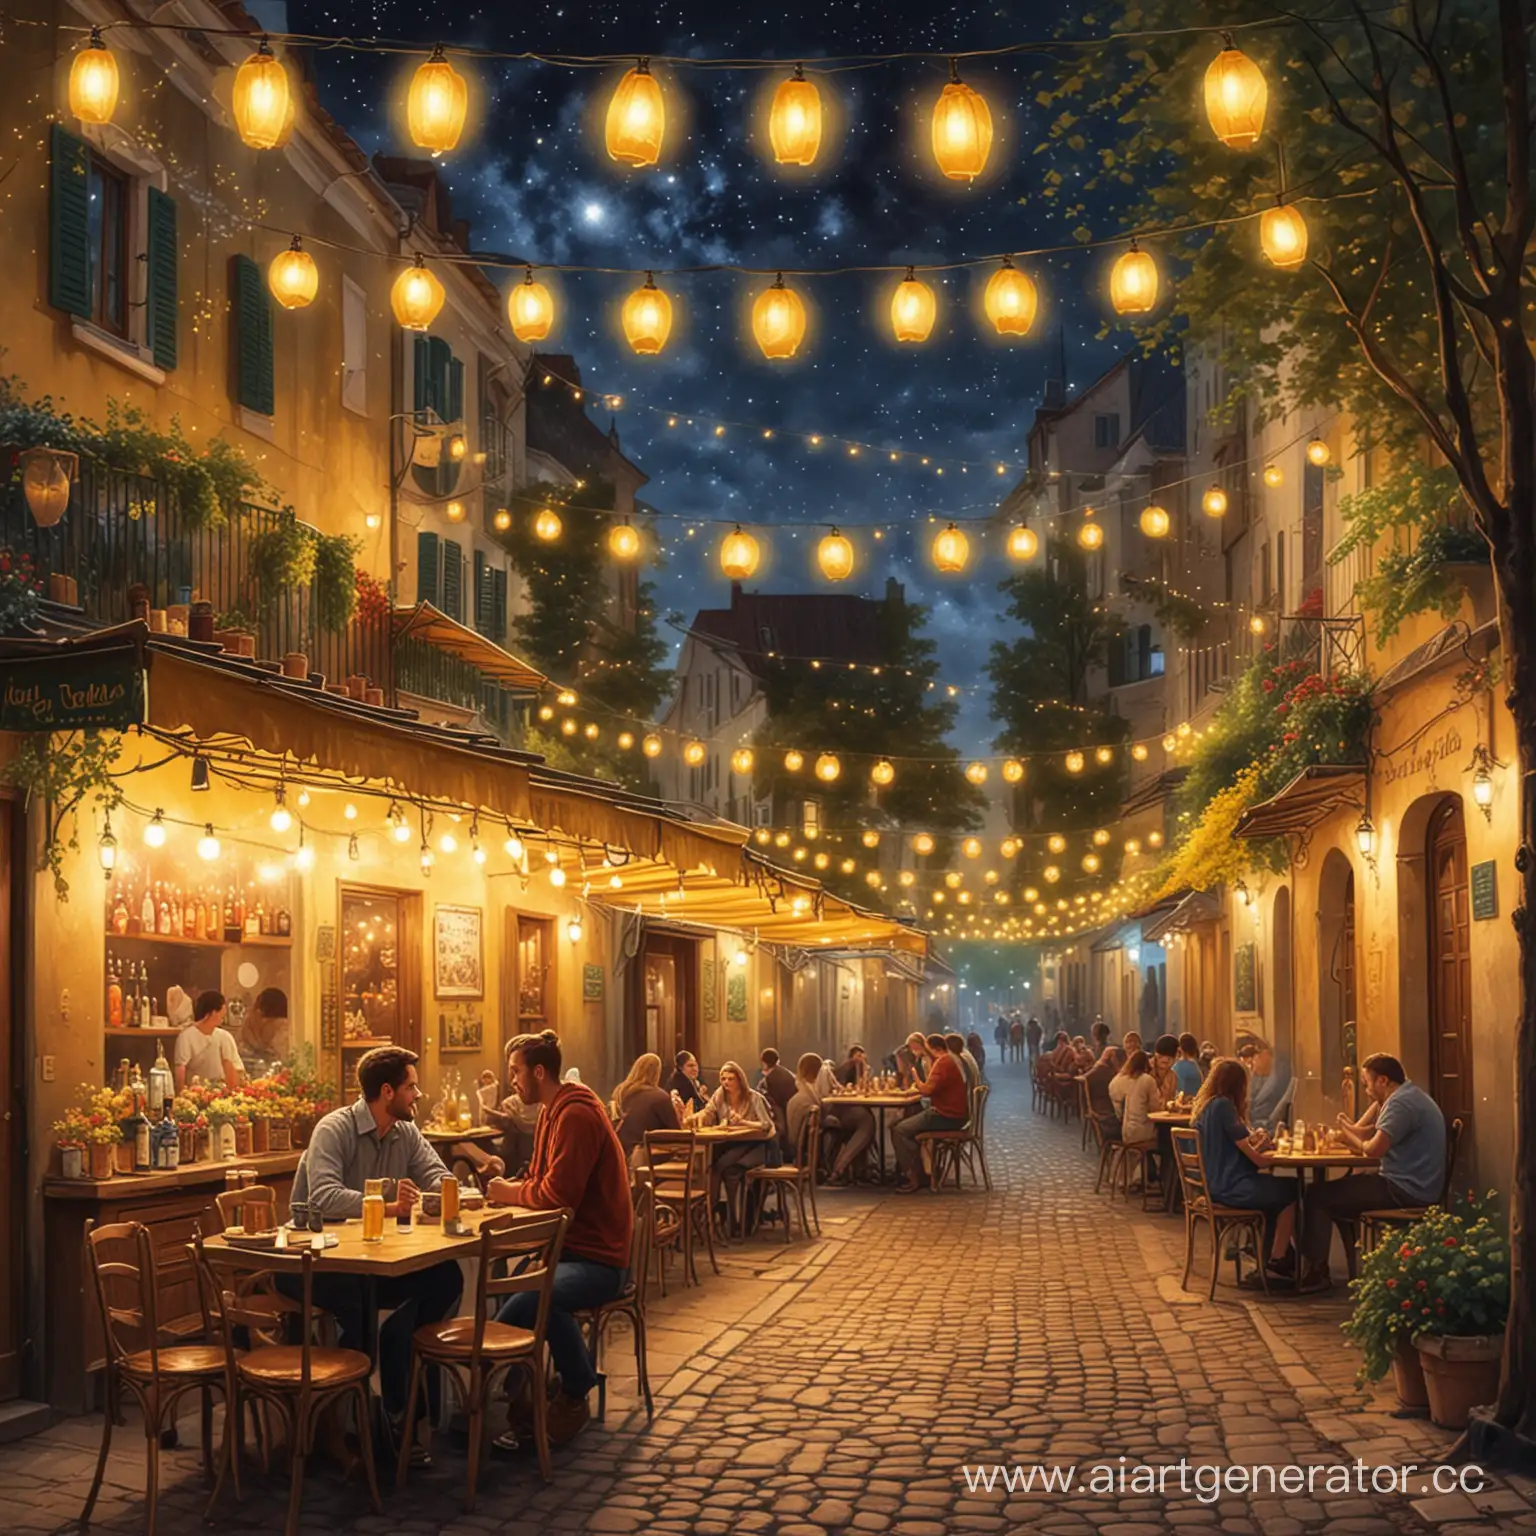 нарисуйте картинку, на которой три человека сидят за столиком в уличном кафе, на столе много еды, пиво, ликеры, на заднем плане видны звезды и фейерверки, на заднем плане картины запечатлен парк освещенный фонарями и желтыми гирляндами